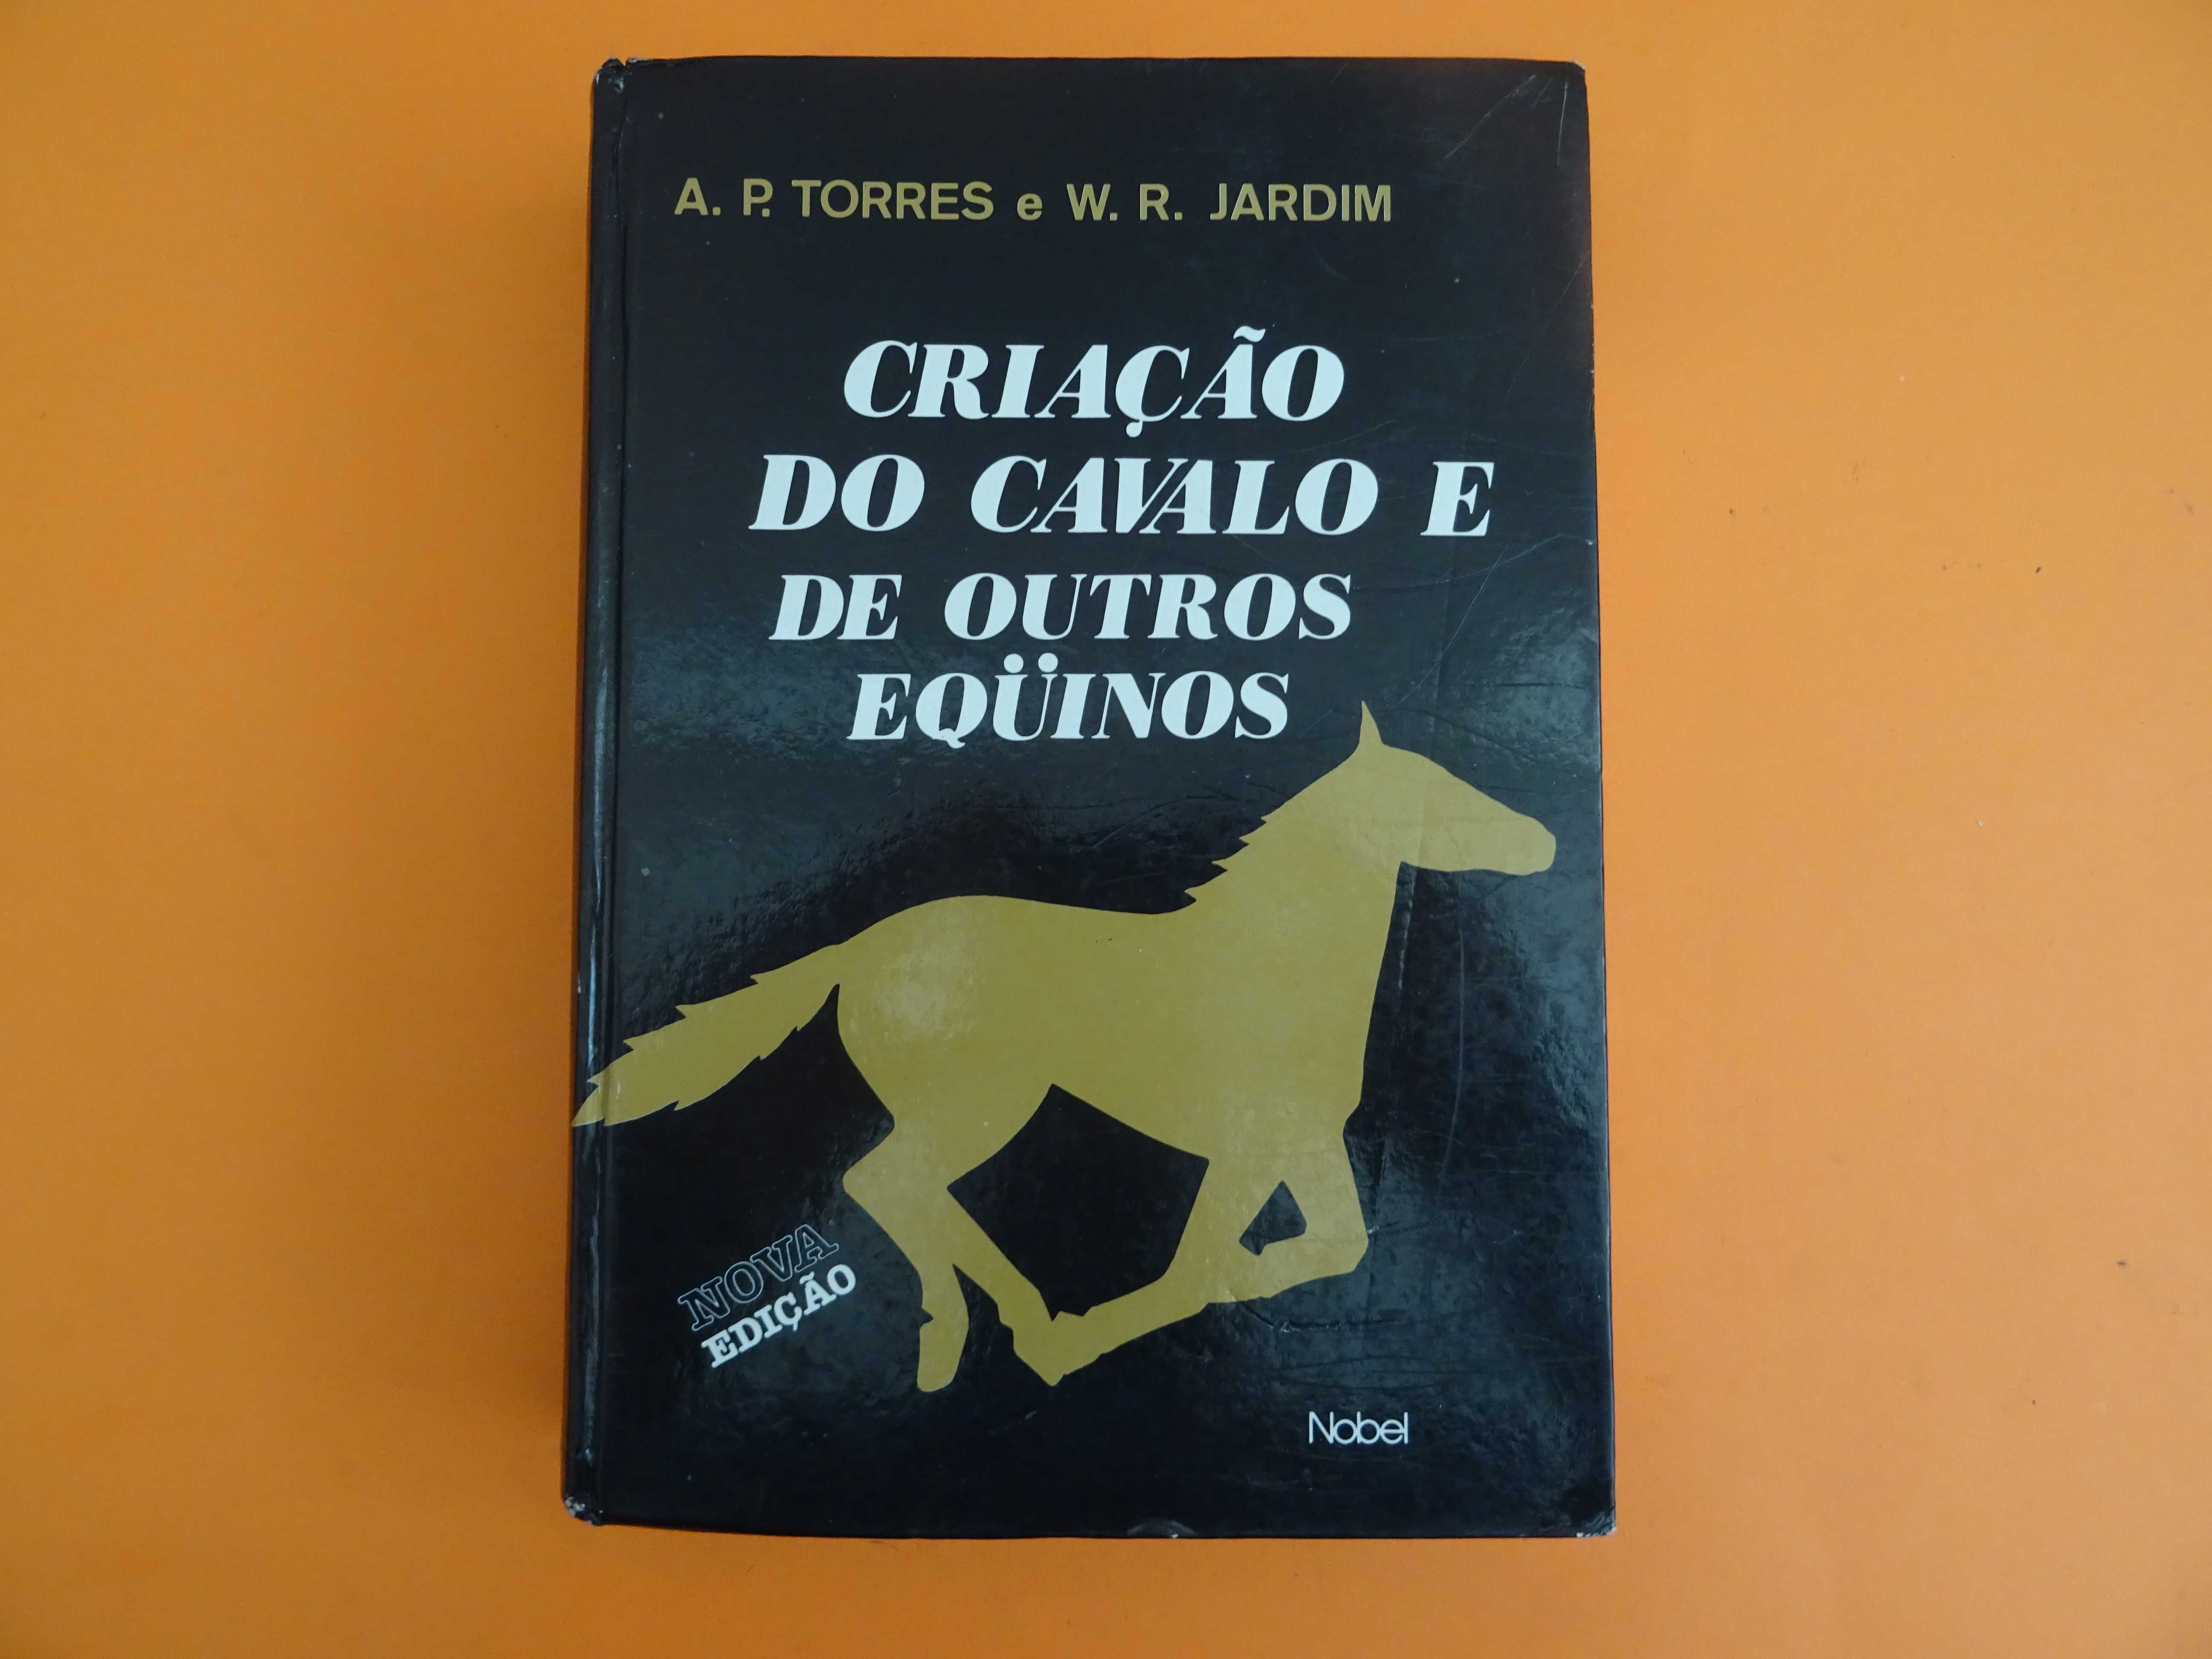 Criação do cavalo e de outros Equinos - A. P. Torres e W. R. Jardim